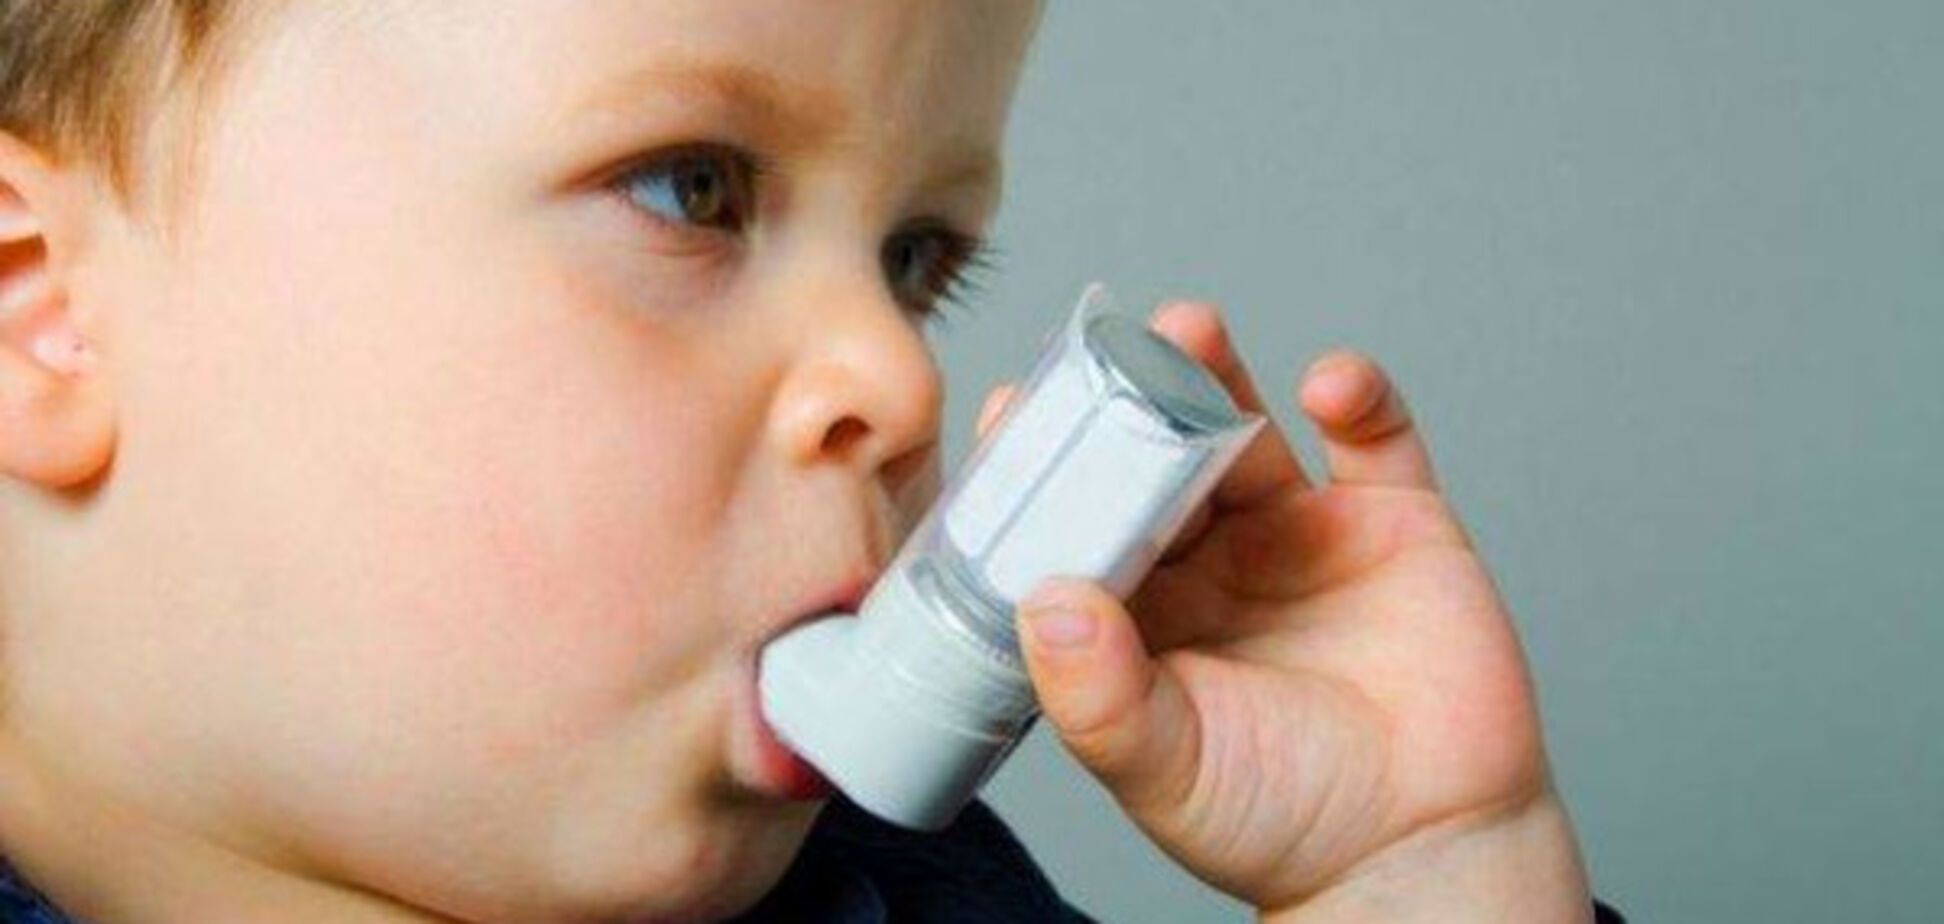 Стало известно, как астма в детстве отображается на здоровье в будущем